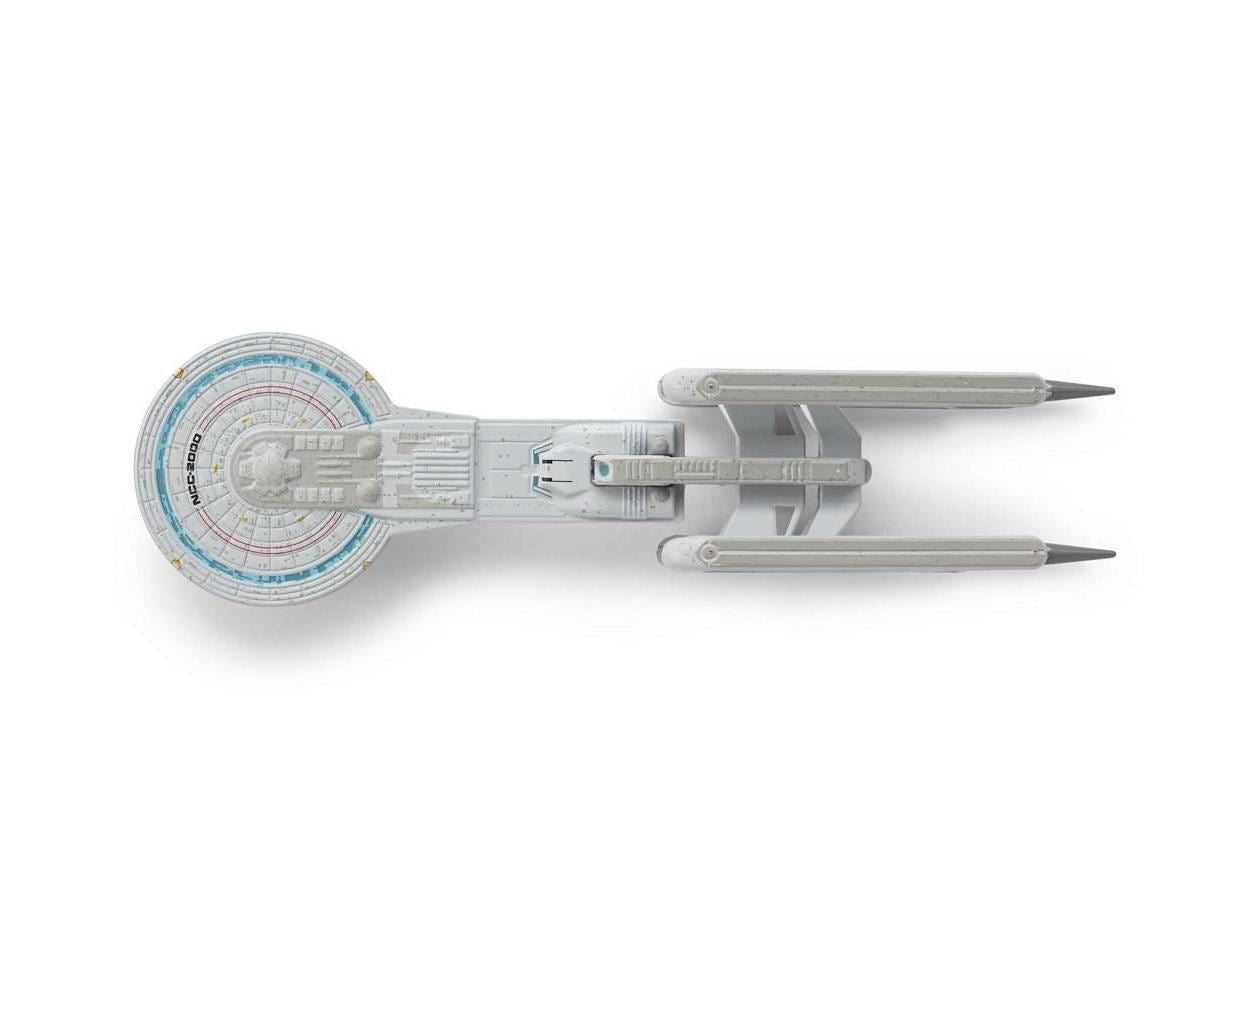 #152 U.S.S. Excelsior (Nilo Rodis Concept I) Diecast Model Ship (Star Trek / Eaglemoss)